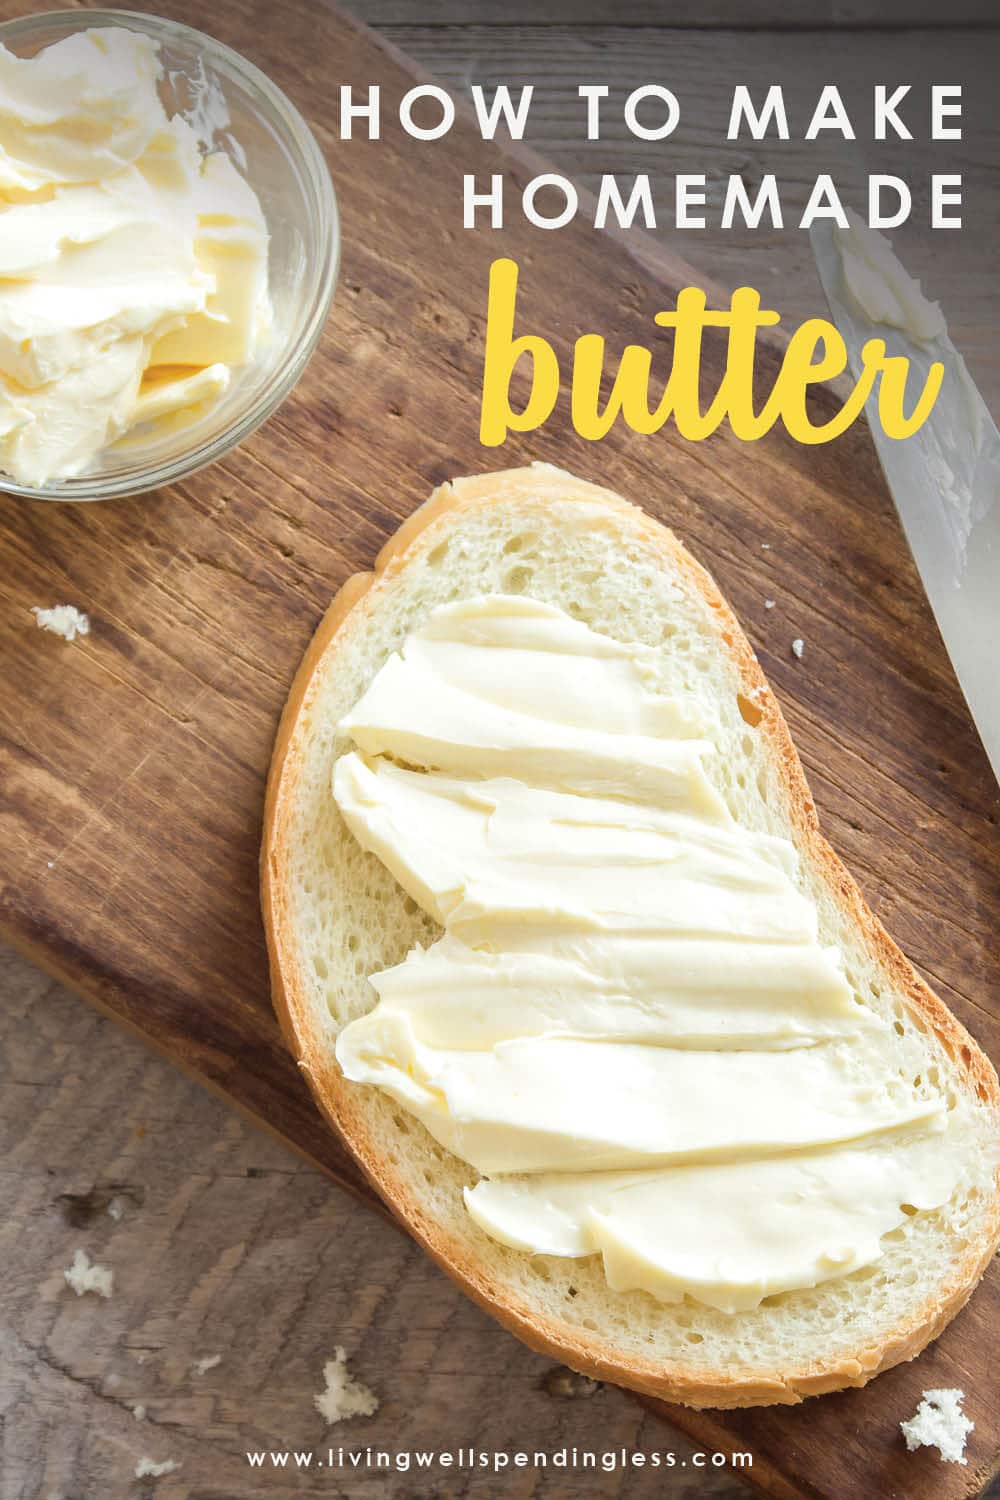 https://www.livingwellspendingless.com/wp-content/uploads/2013/02/How-to-Make-Homemade-Butter_Vertical.jpg